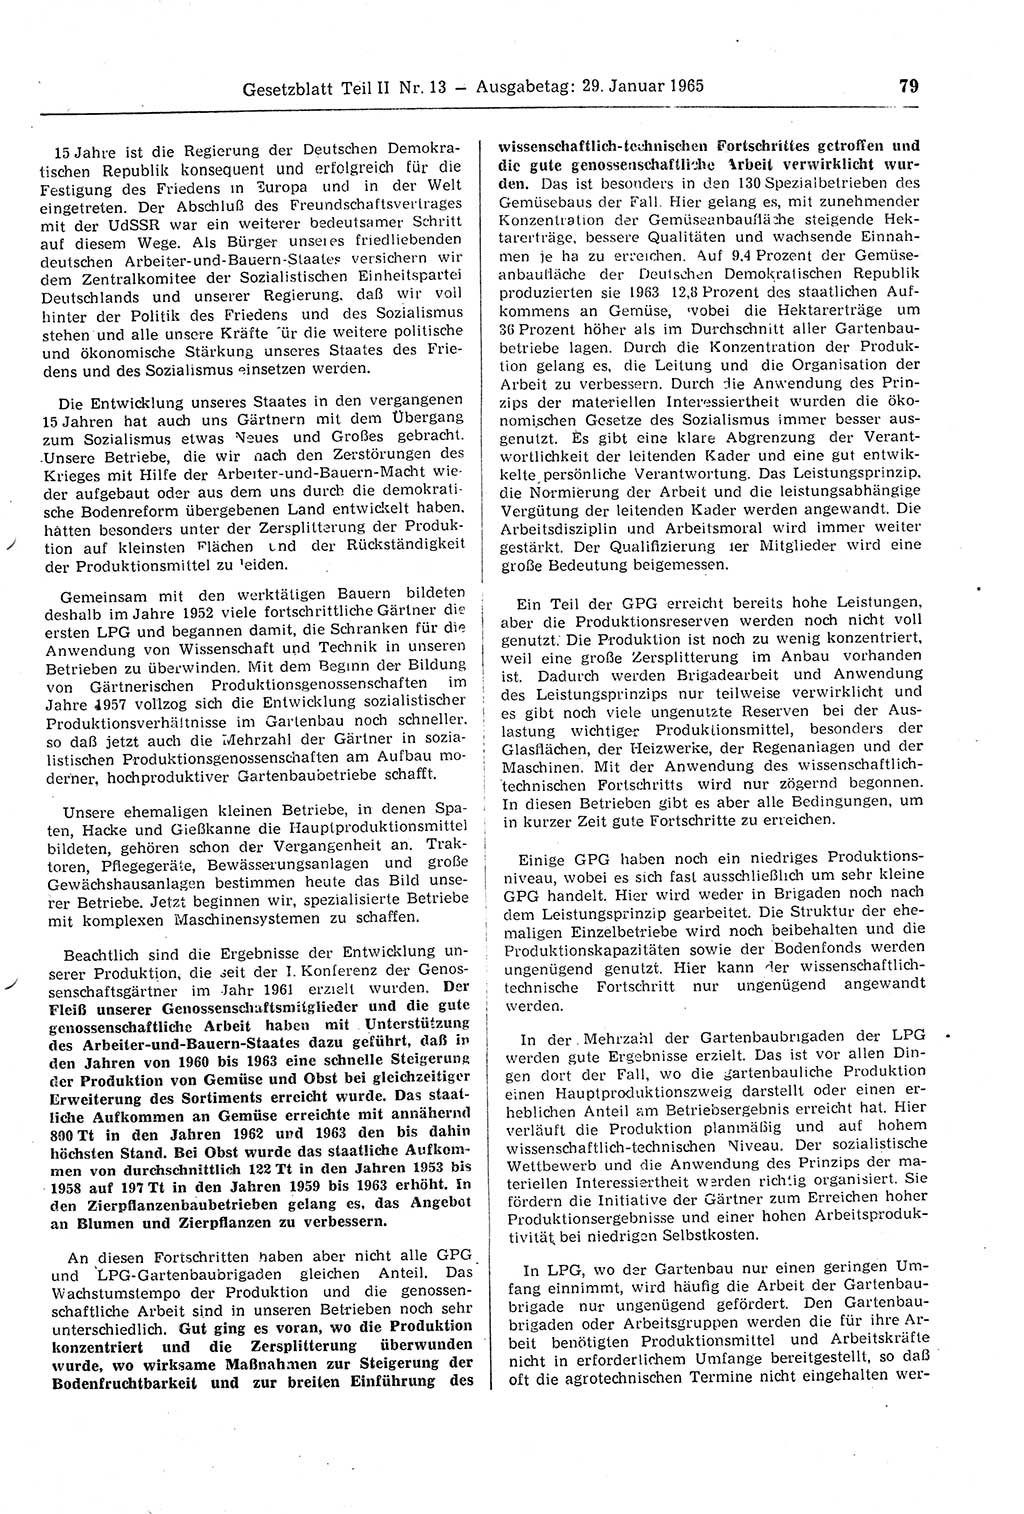 Gesetzblatt (GBl.) der Deutschen Demokratischen Republik (DDR) Teil ⅠⅠ 1965, Seite 79 (GBl. DDR ⅠⅠ 1965, S. 79)